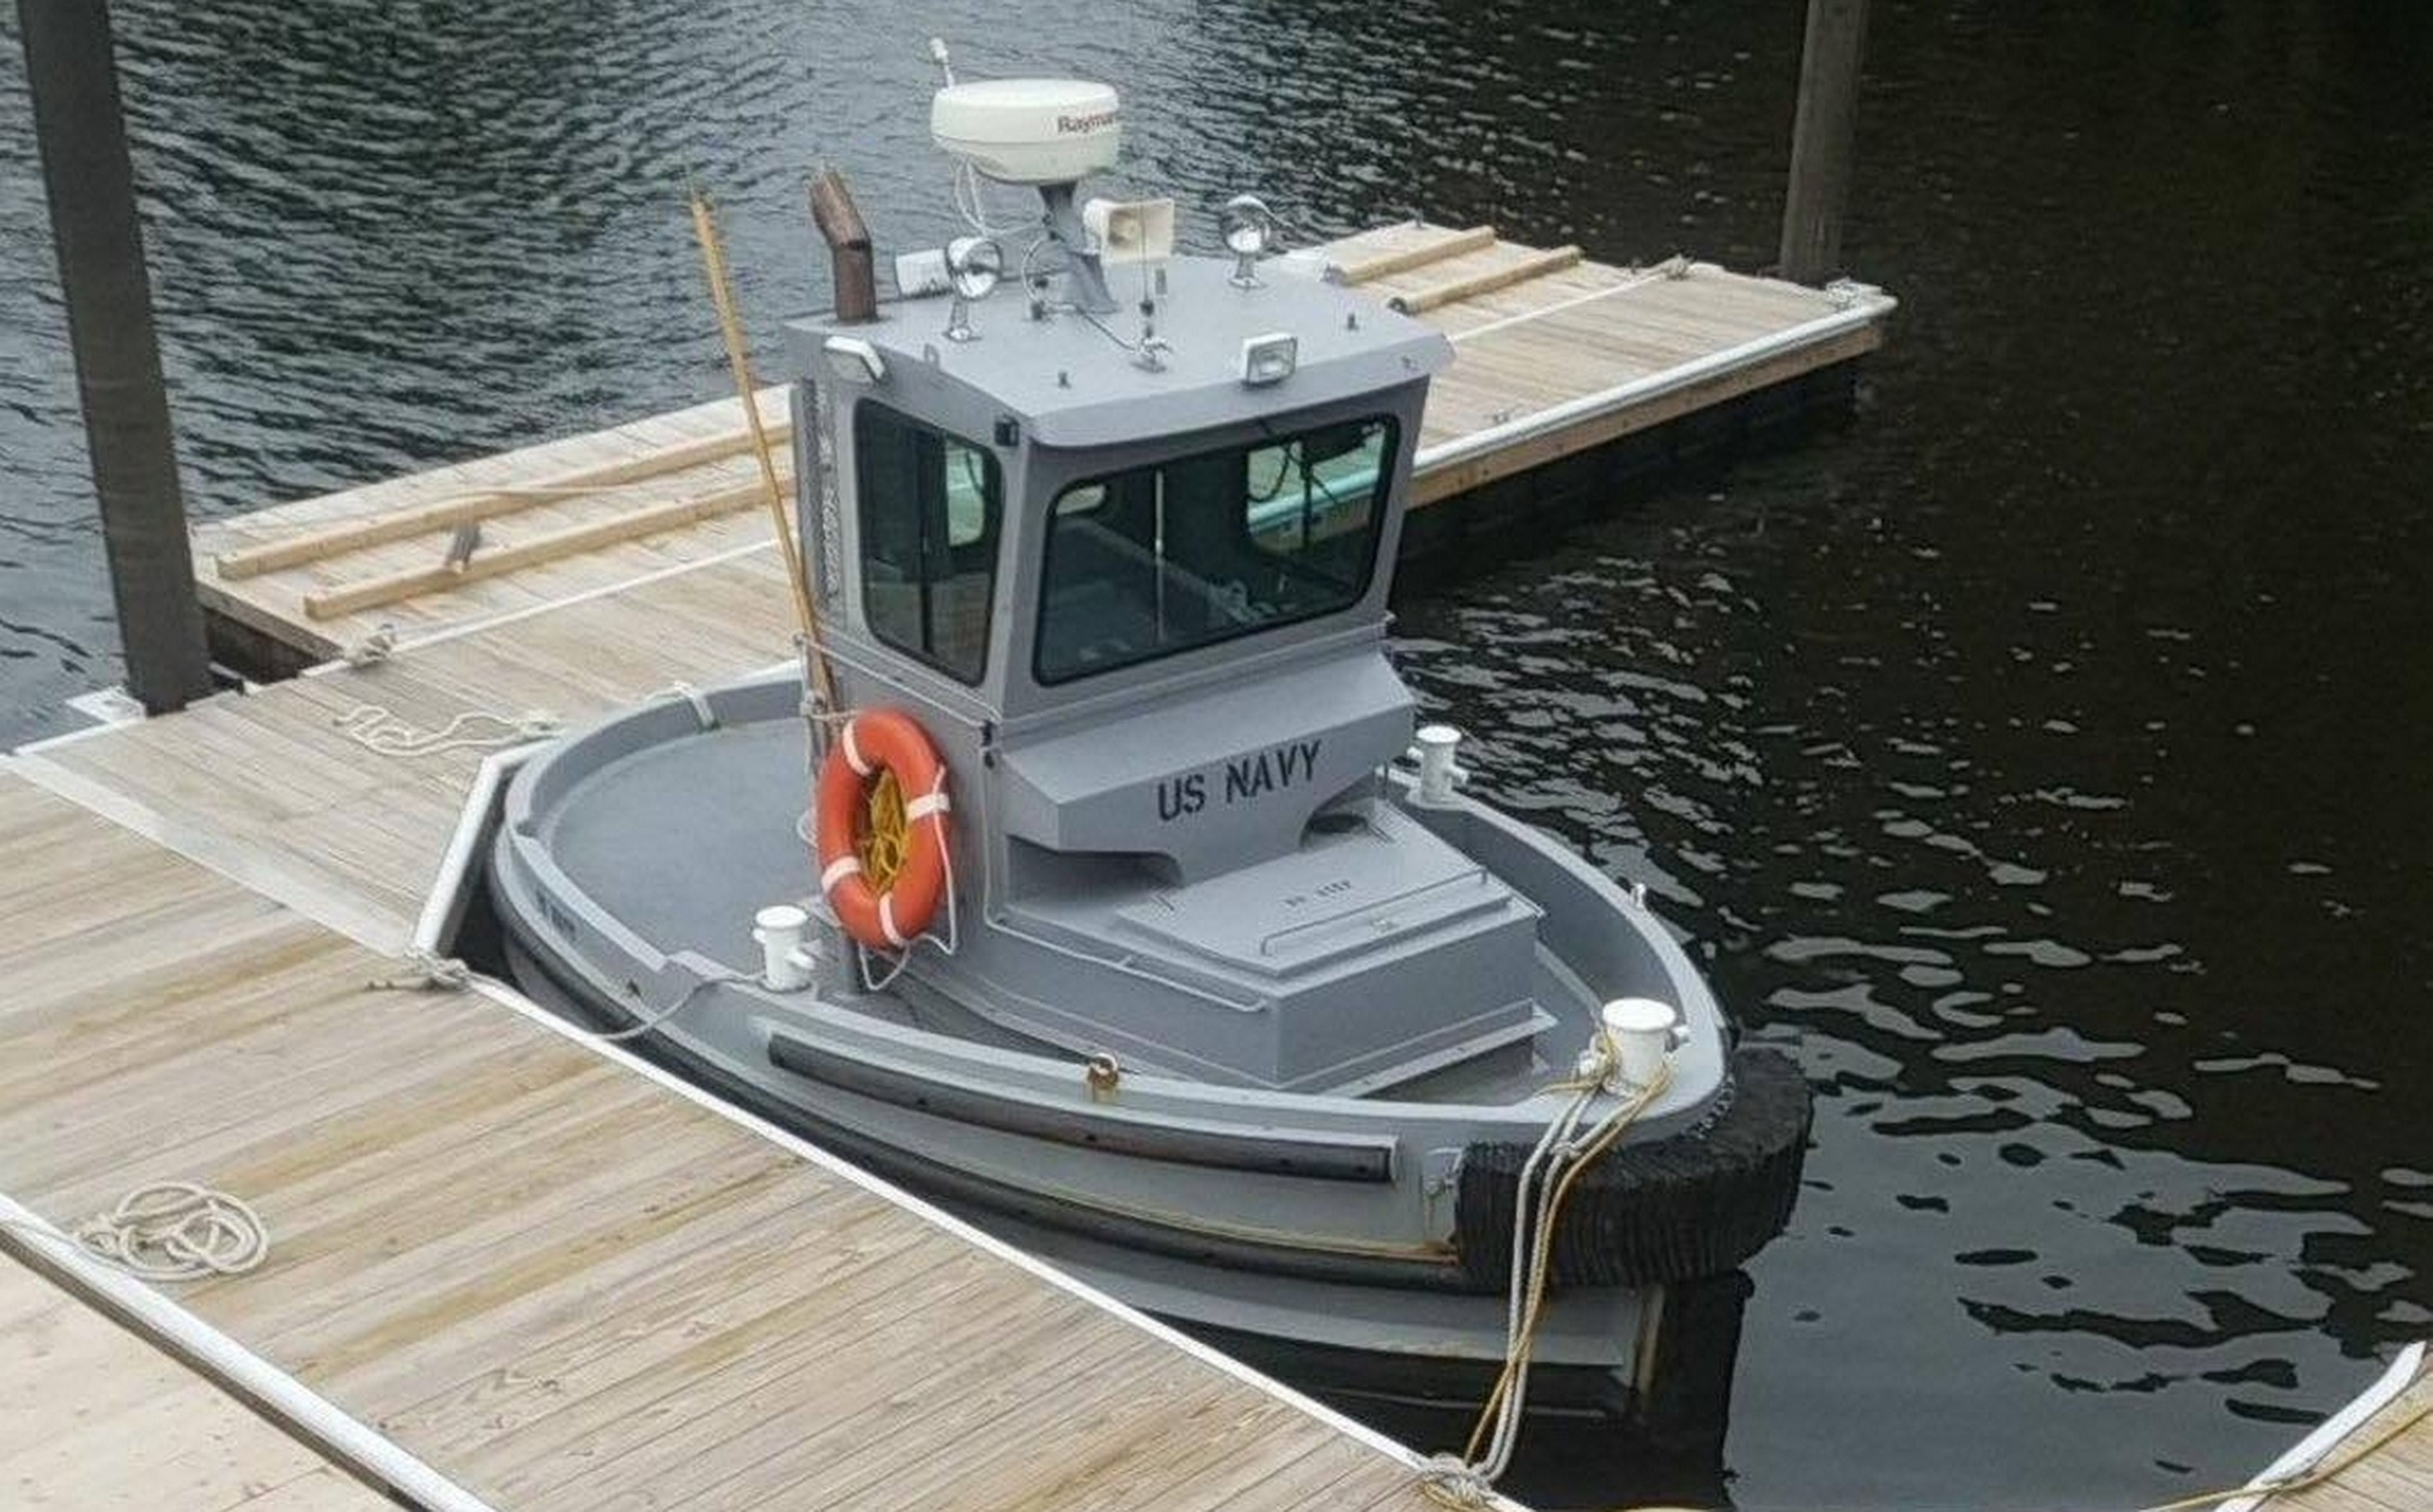 Este pequeño bote es la embarcación más diminuta del ejército de Estados Unidos